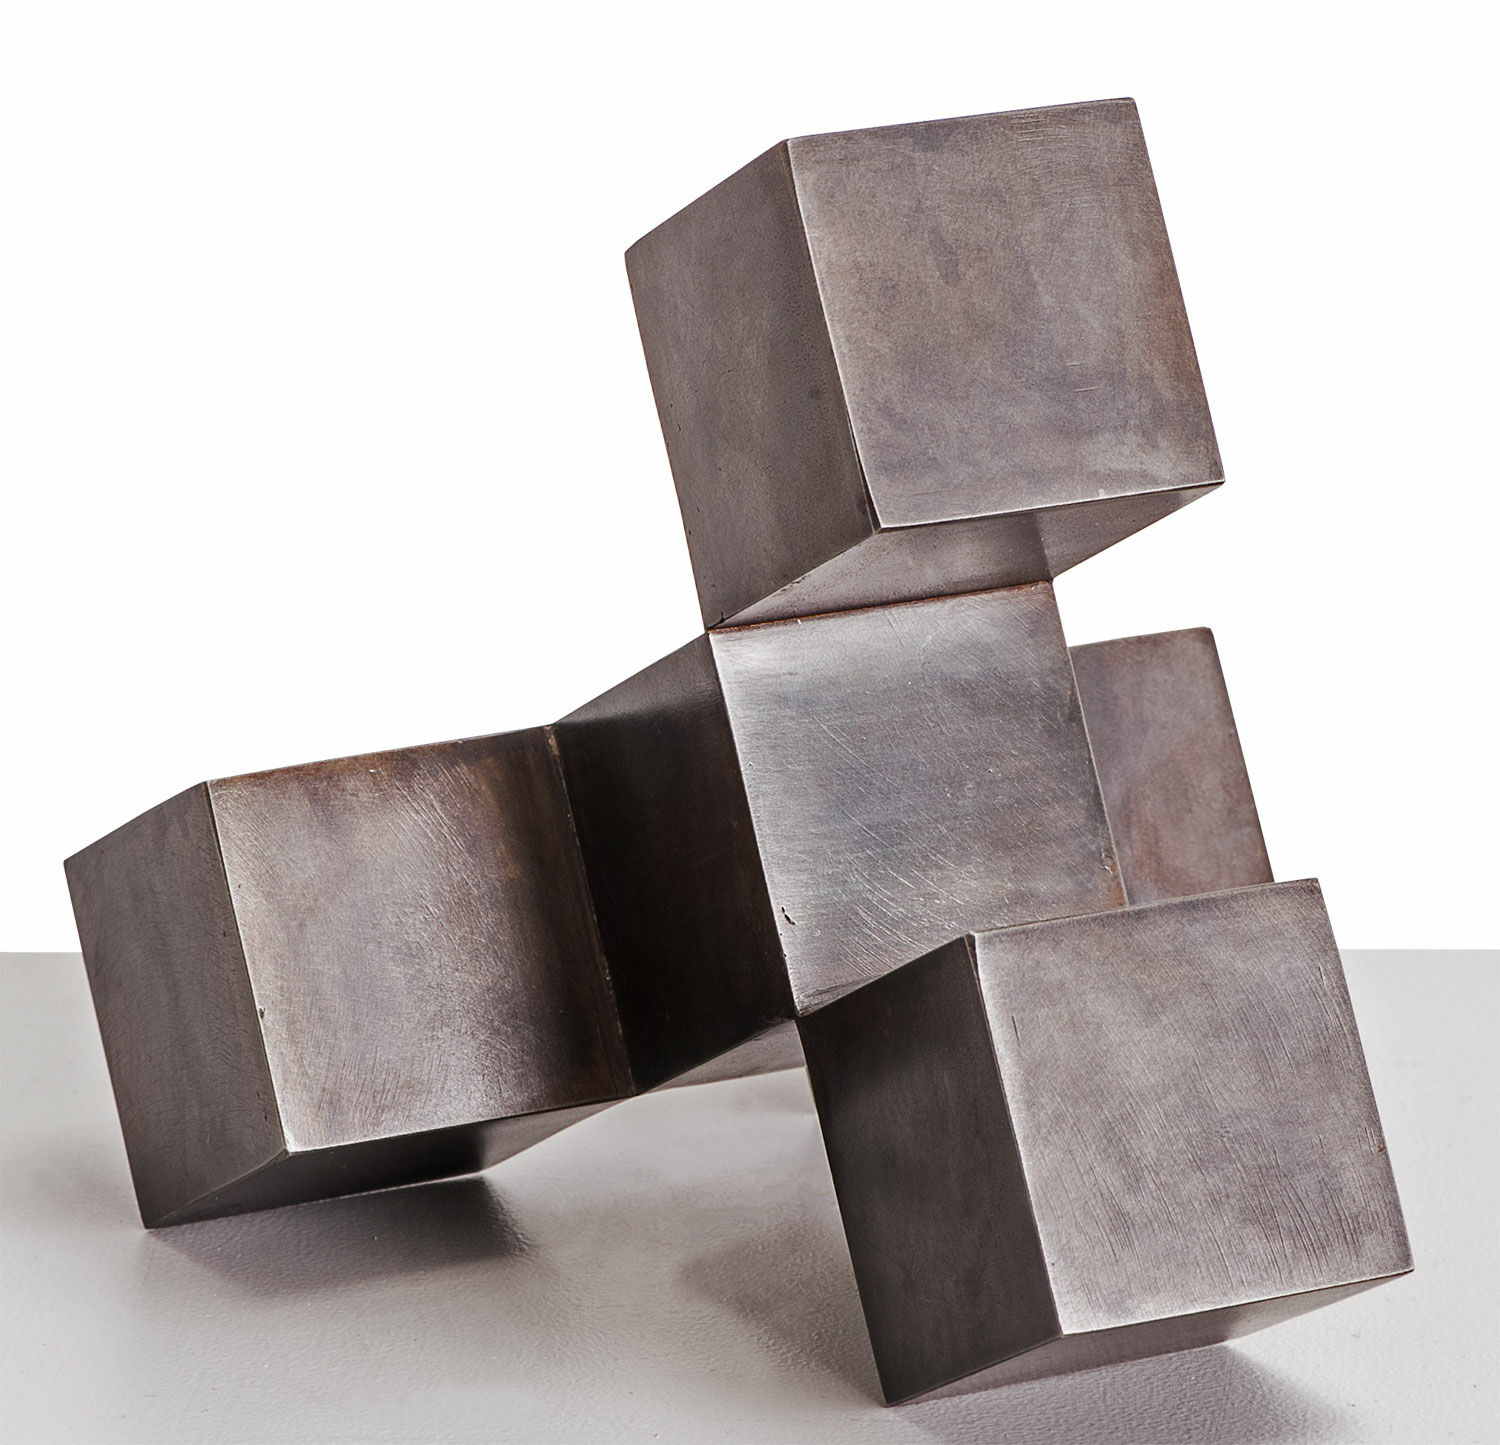 Stahlskulptur "CUBECUBE" (2010) von Stephan Siebers